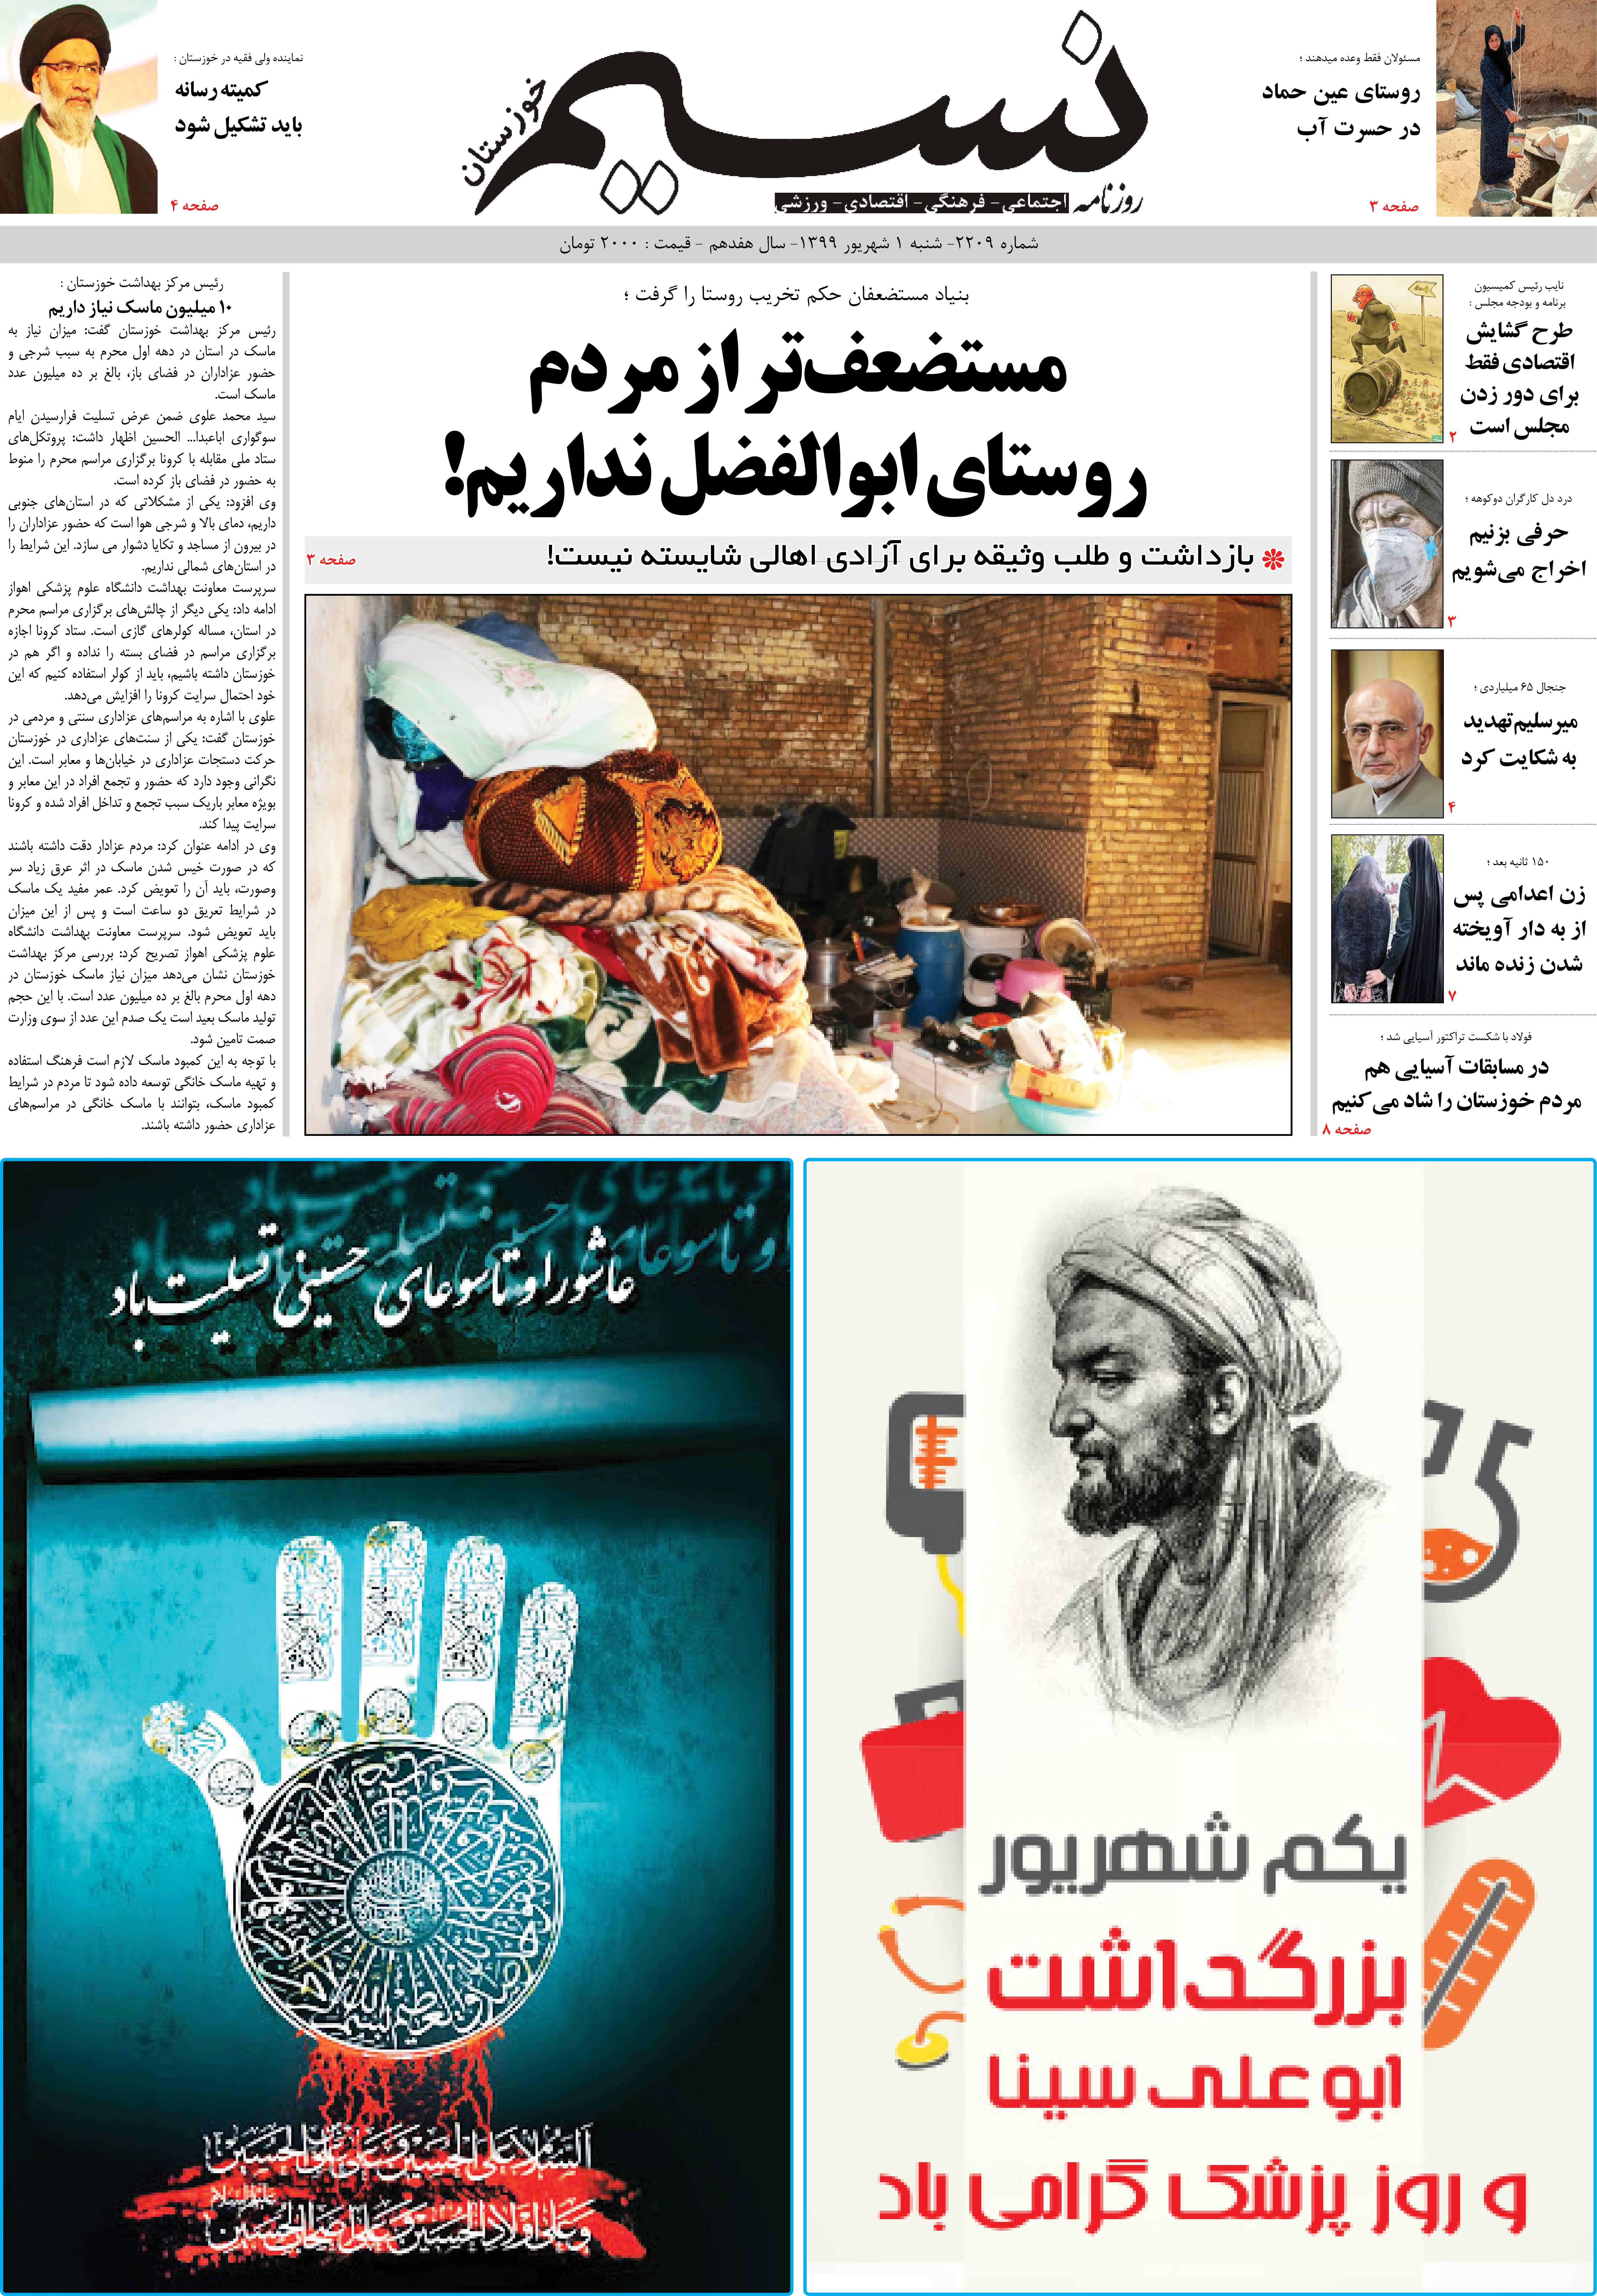 صفحه اصلی روزنامه نسیم شماره 2209 